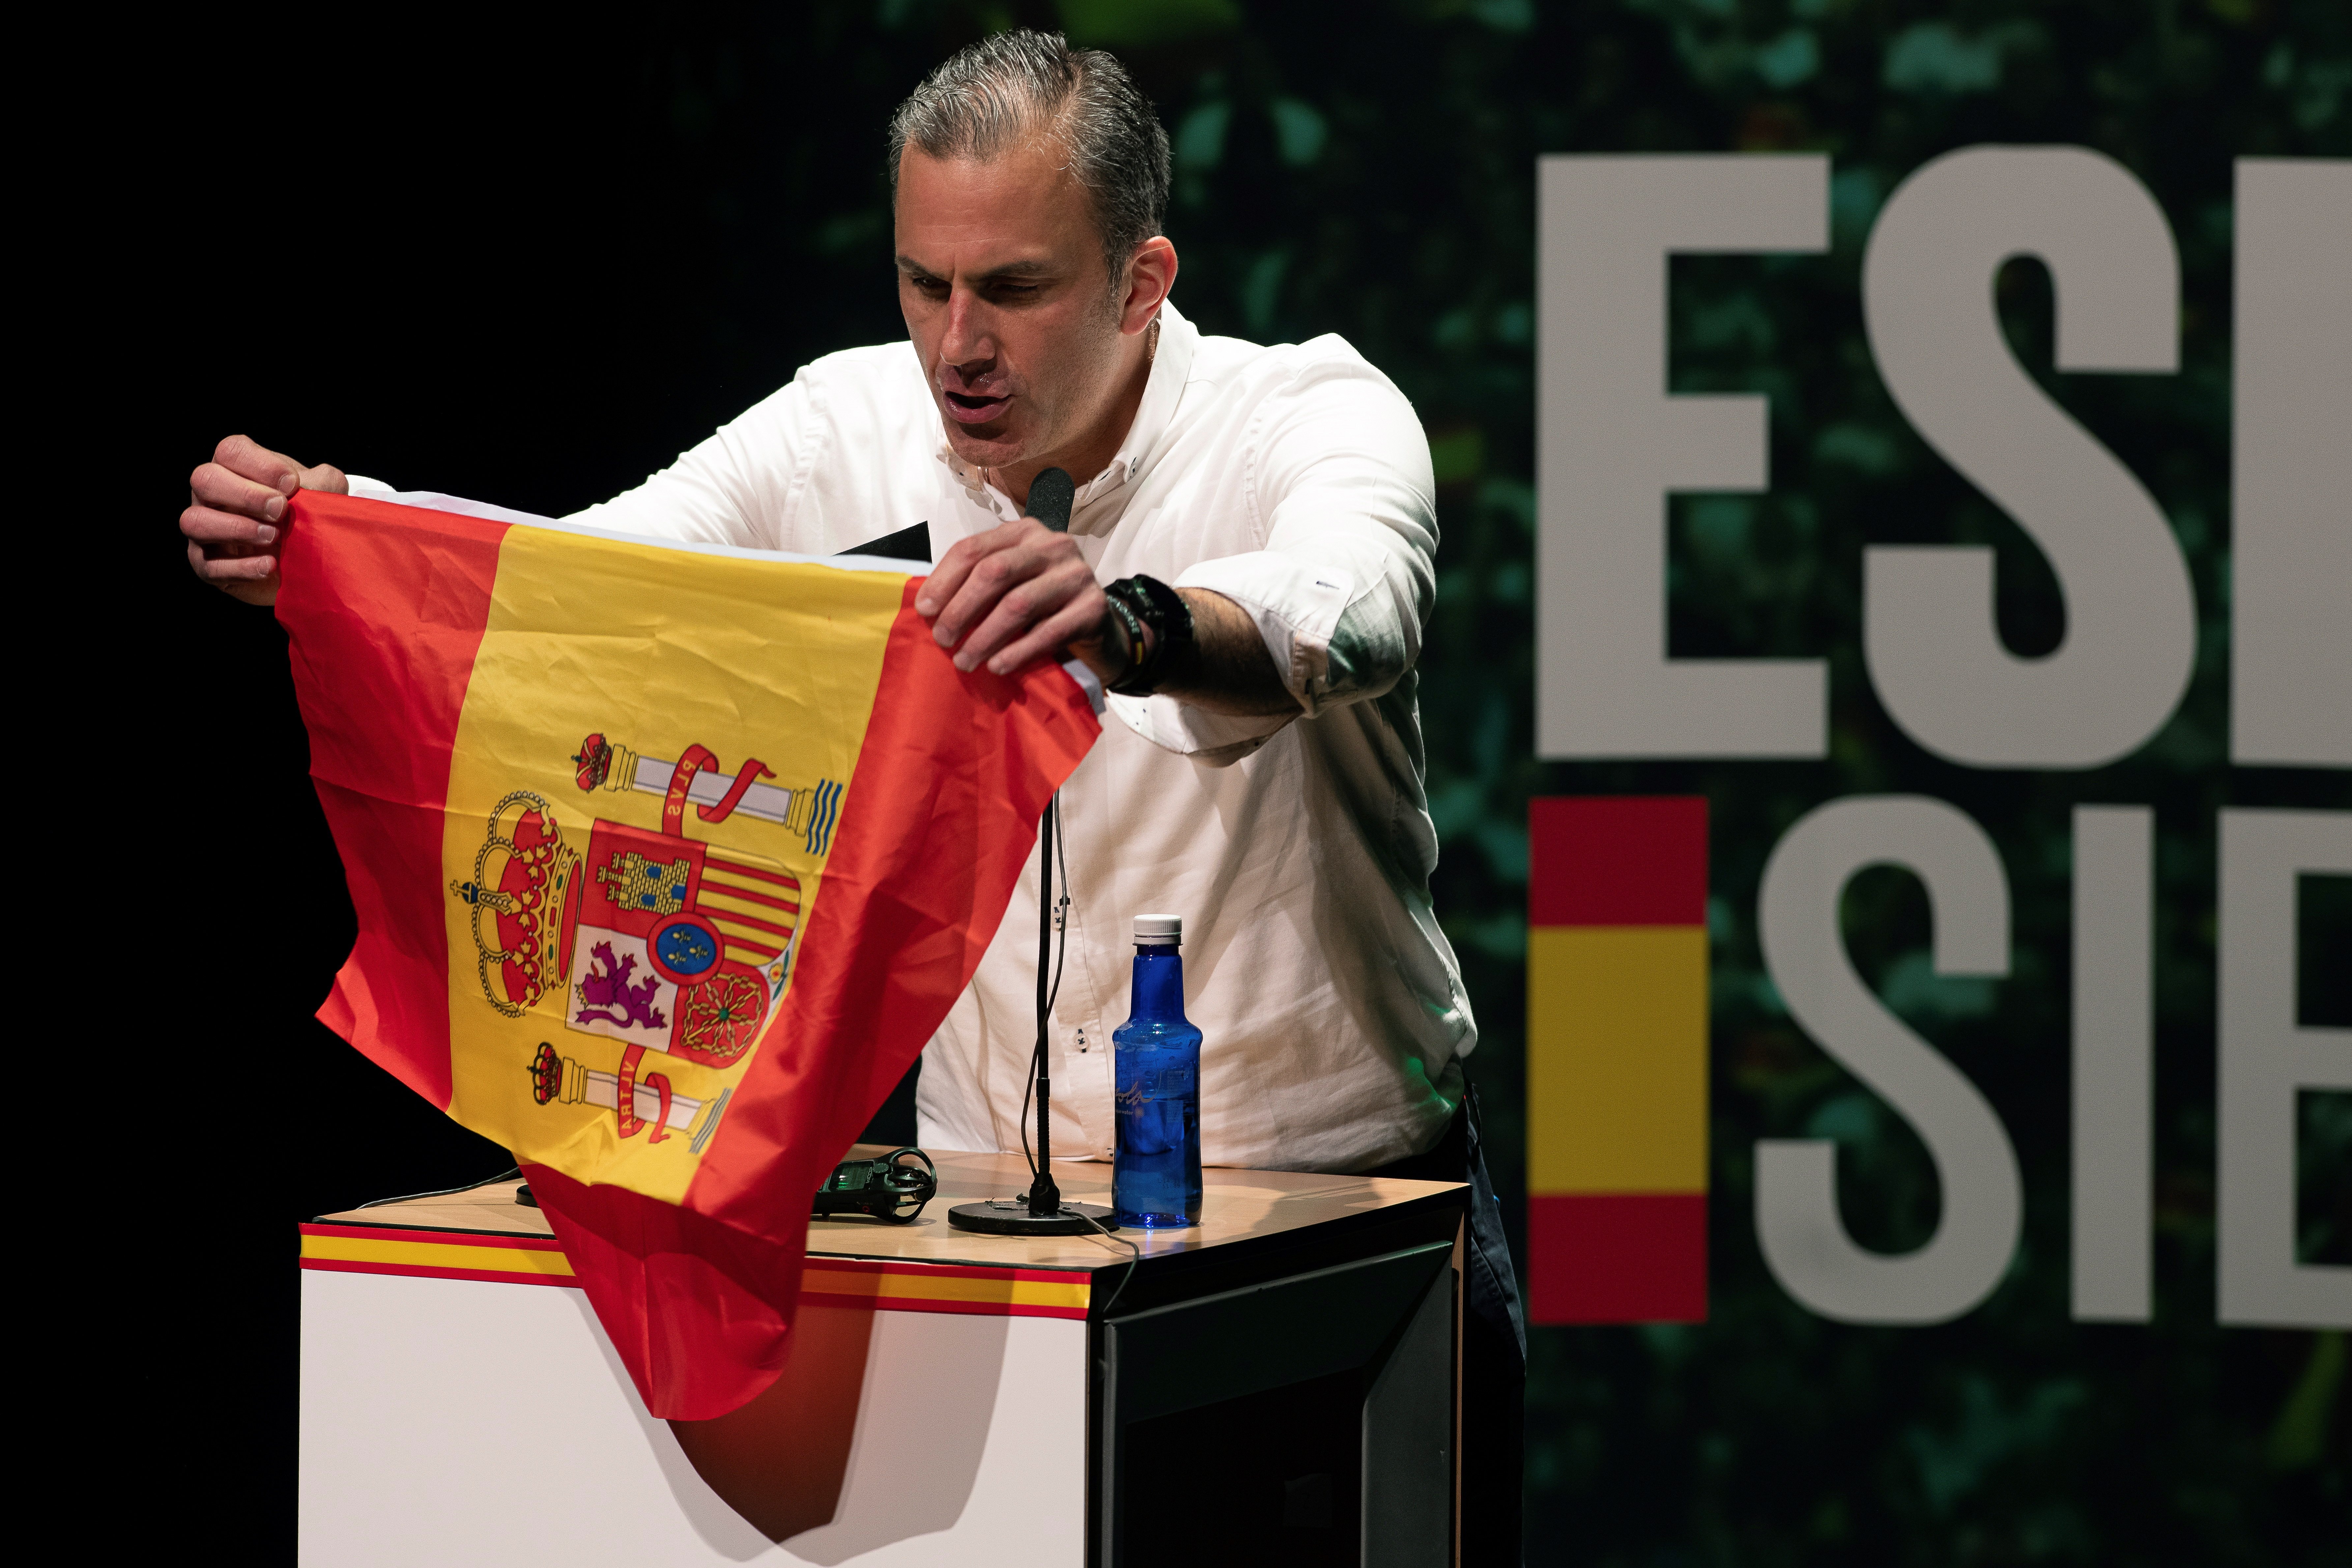 Vox vol examinar de castellà tots els espanyols